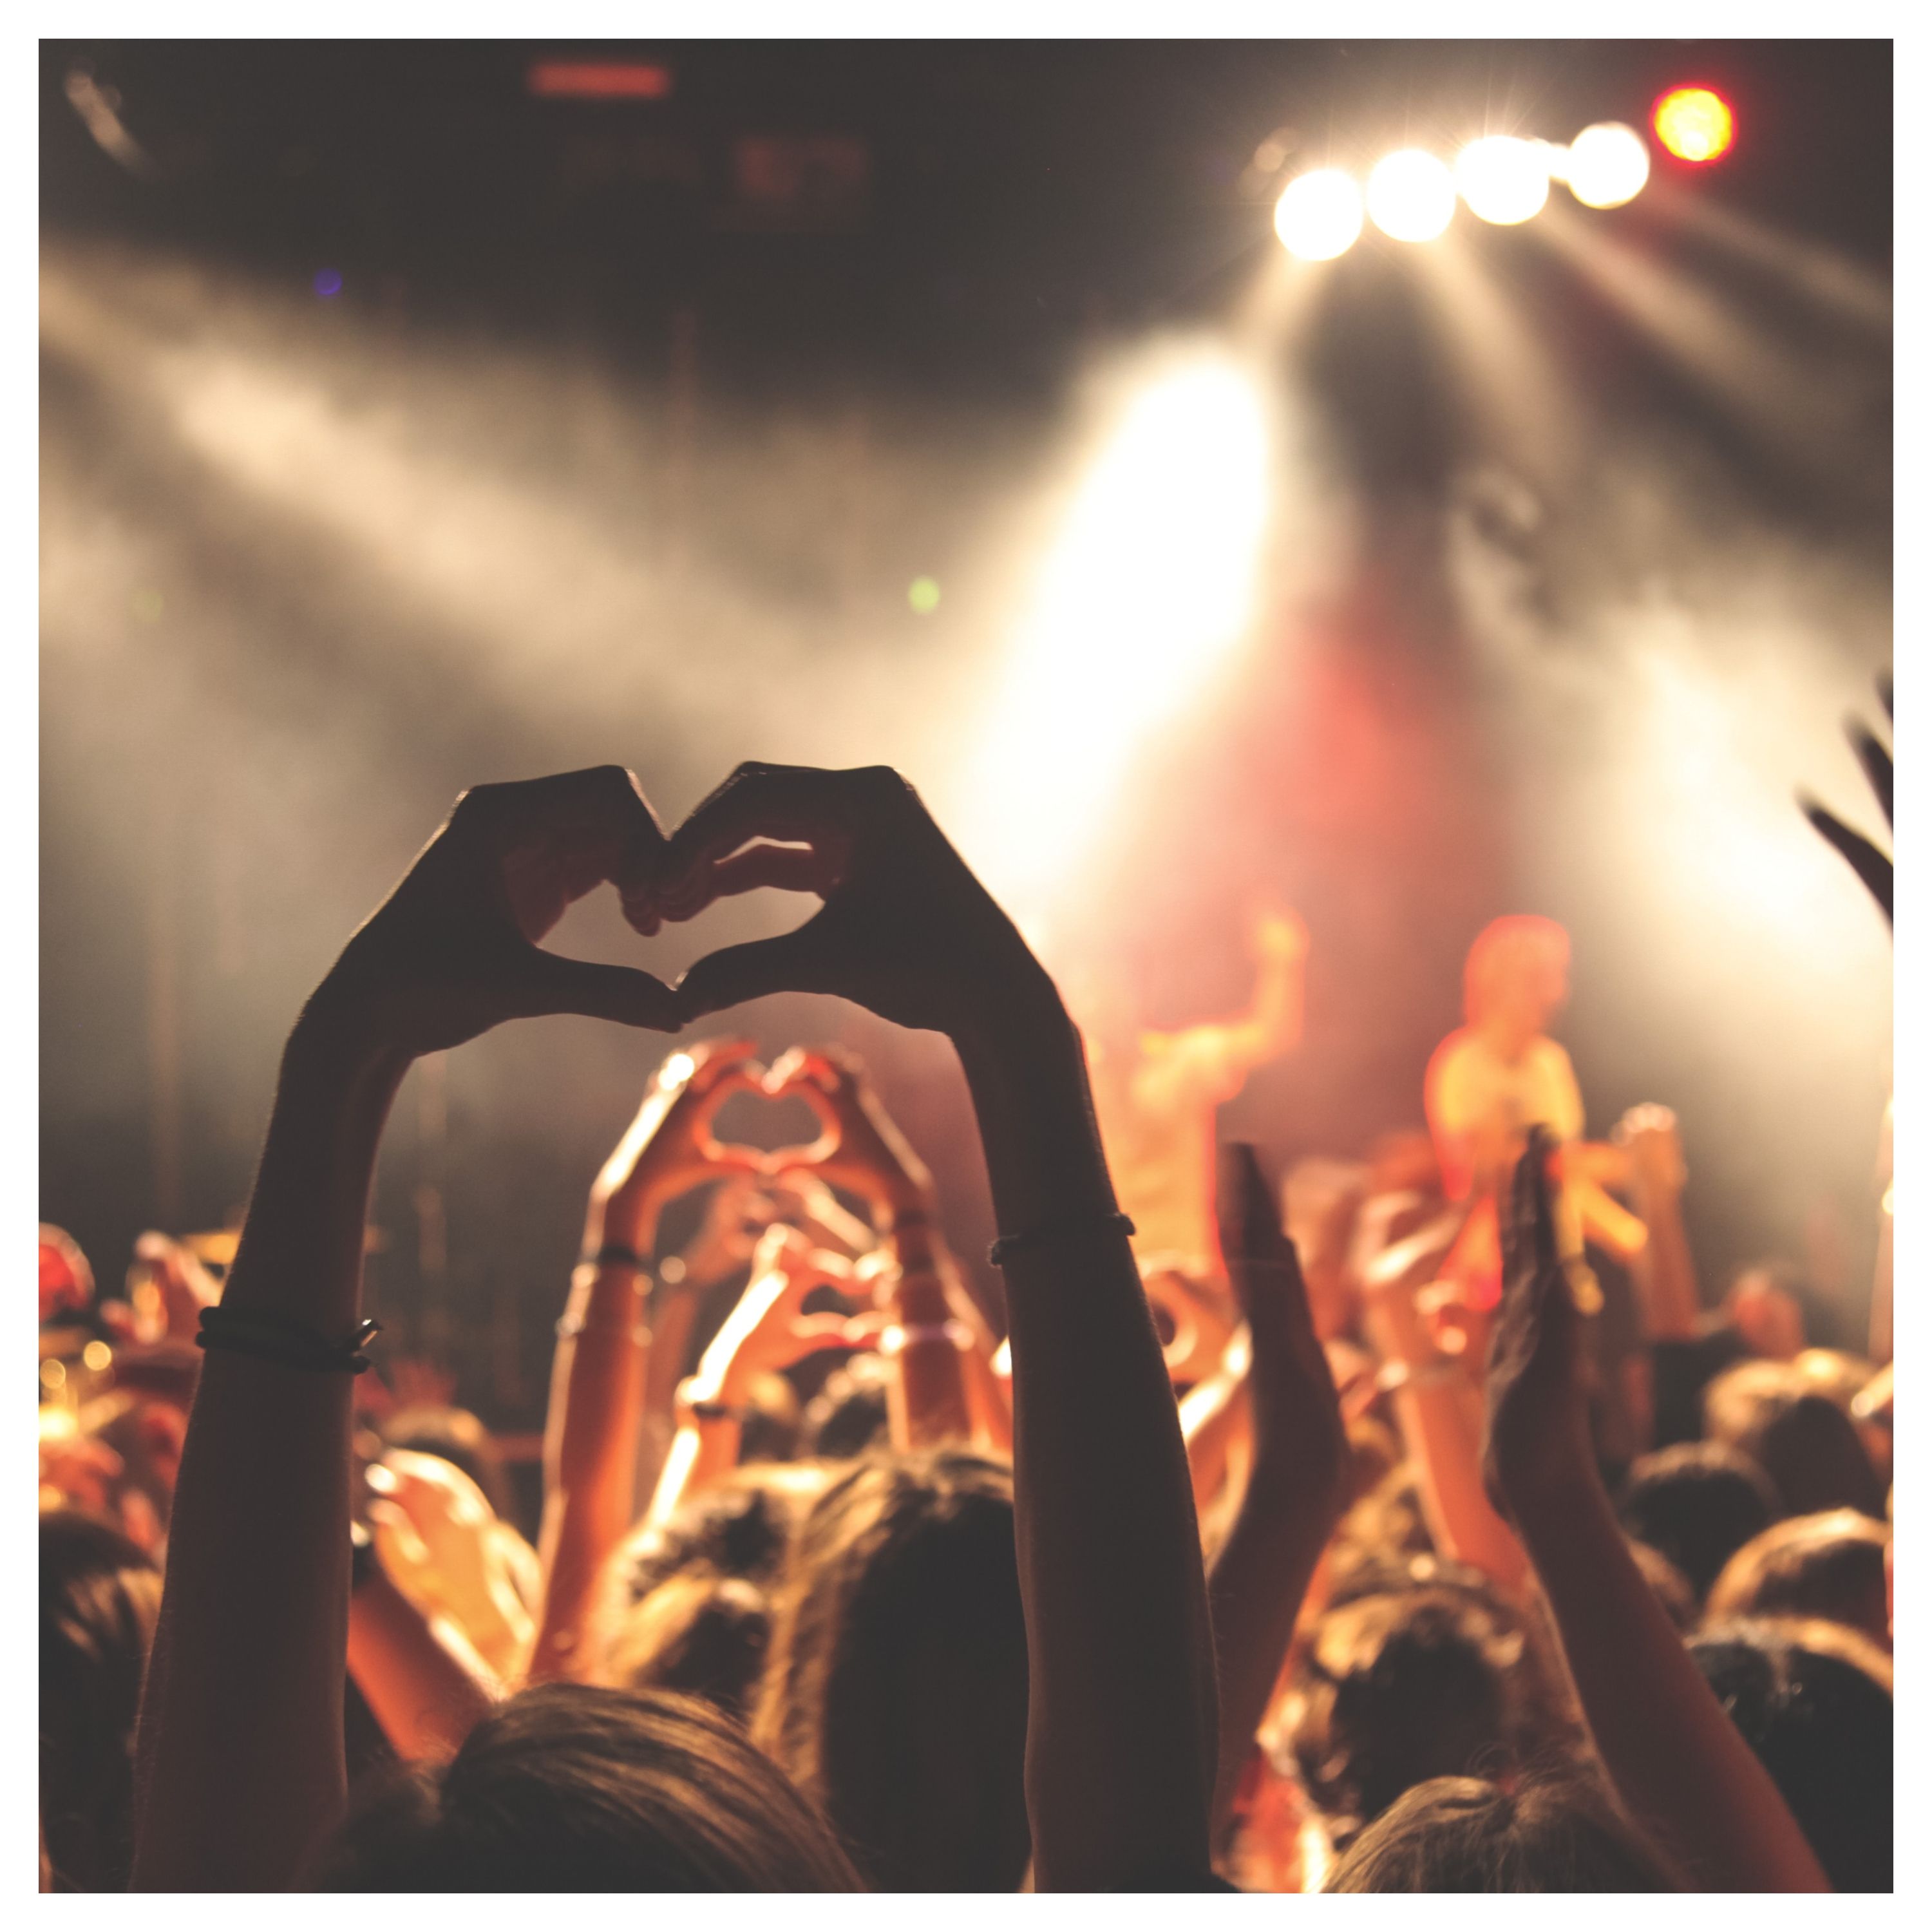 Une personne fait le signe coeur avec les doigts, au milieu d'une foule assistant à un concert